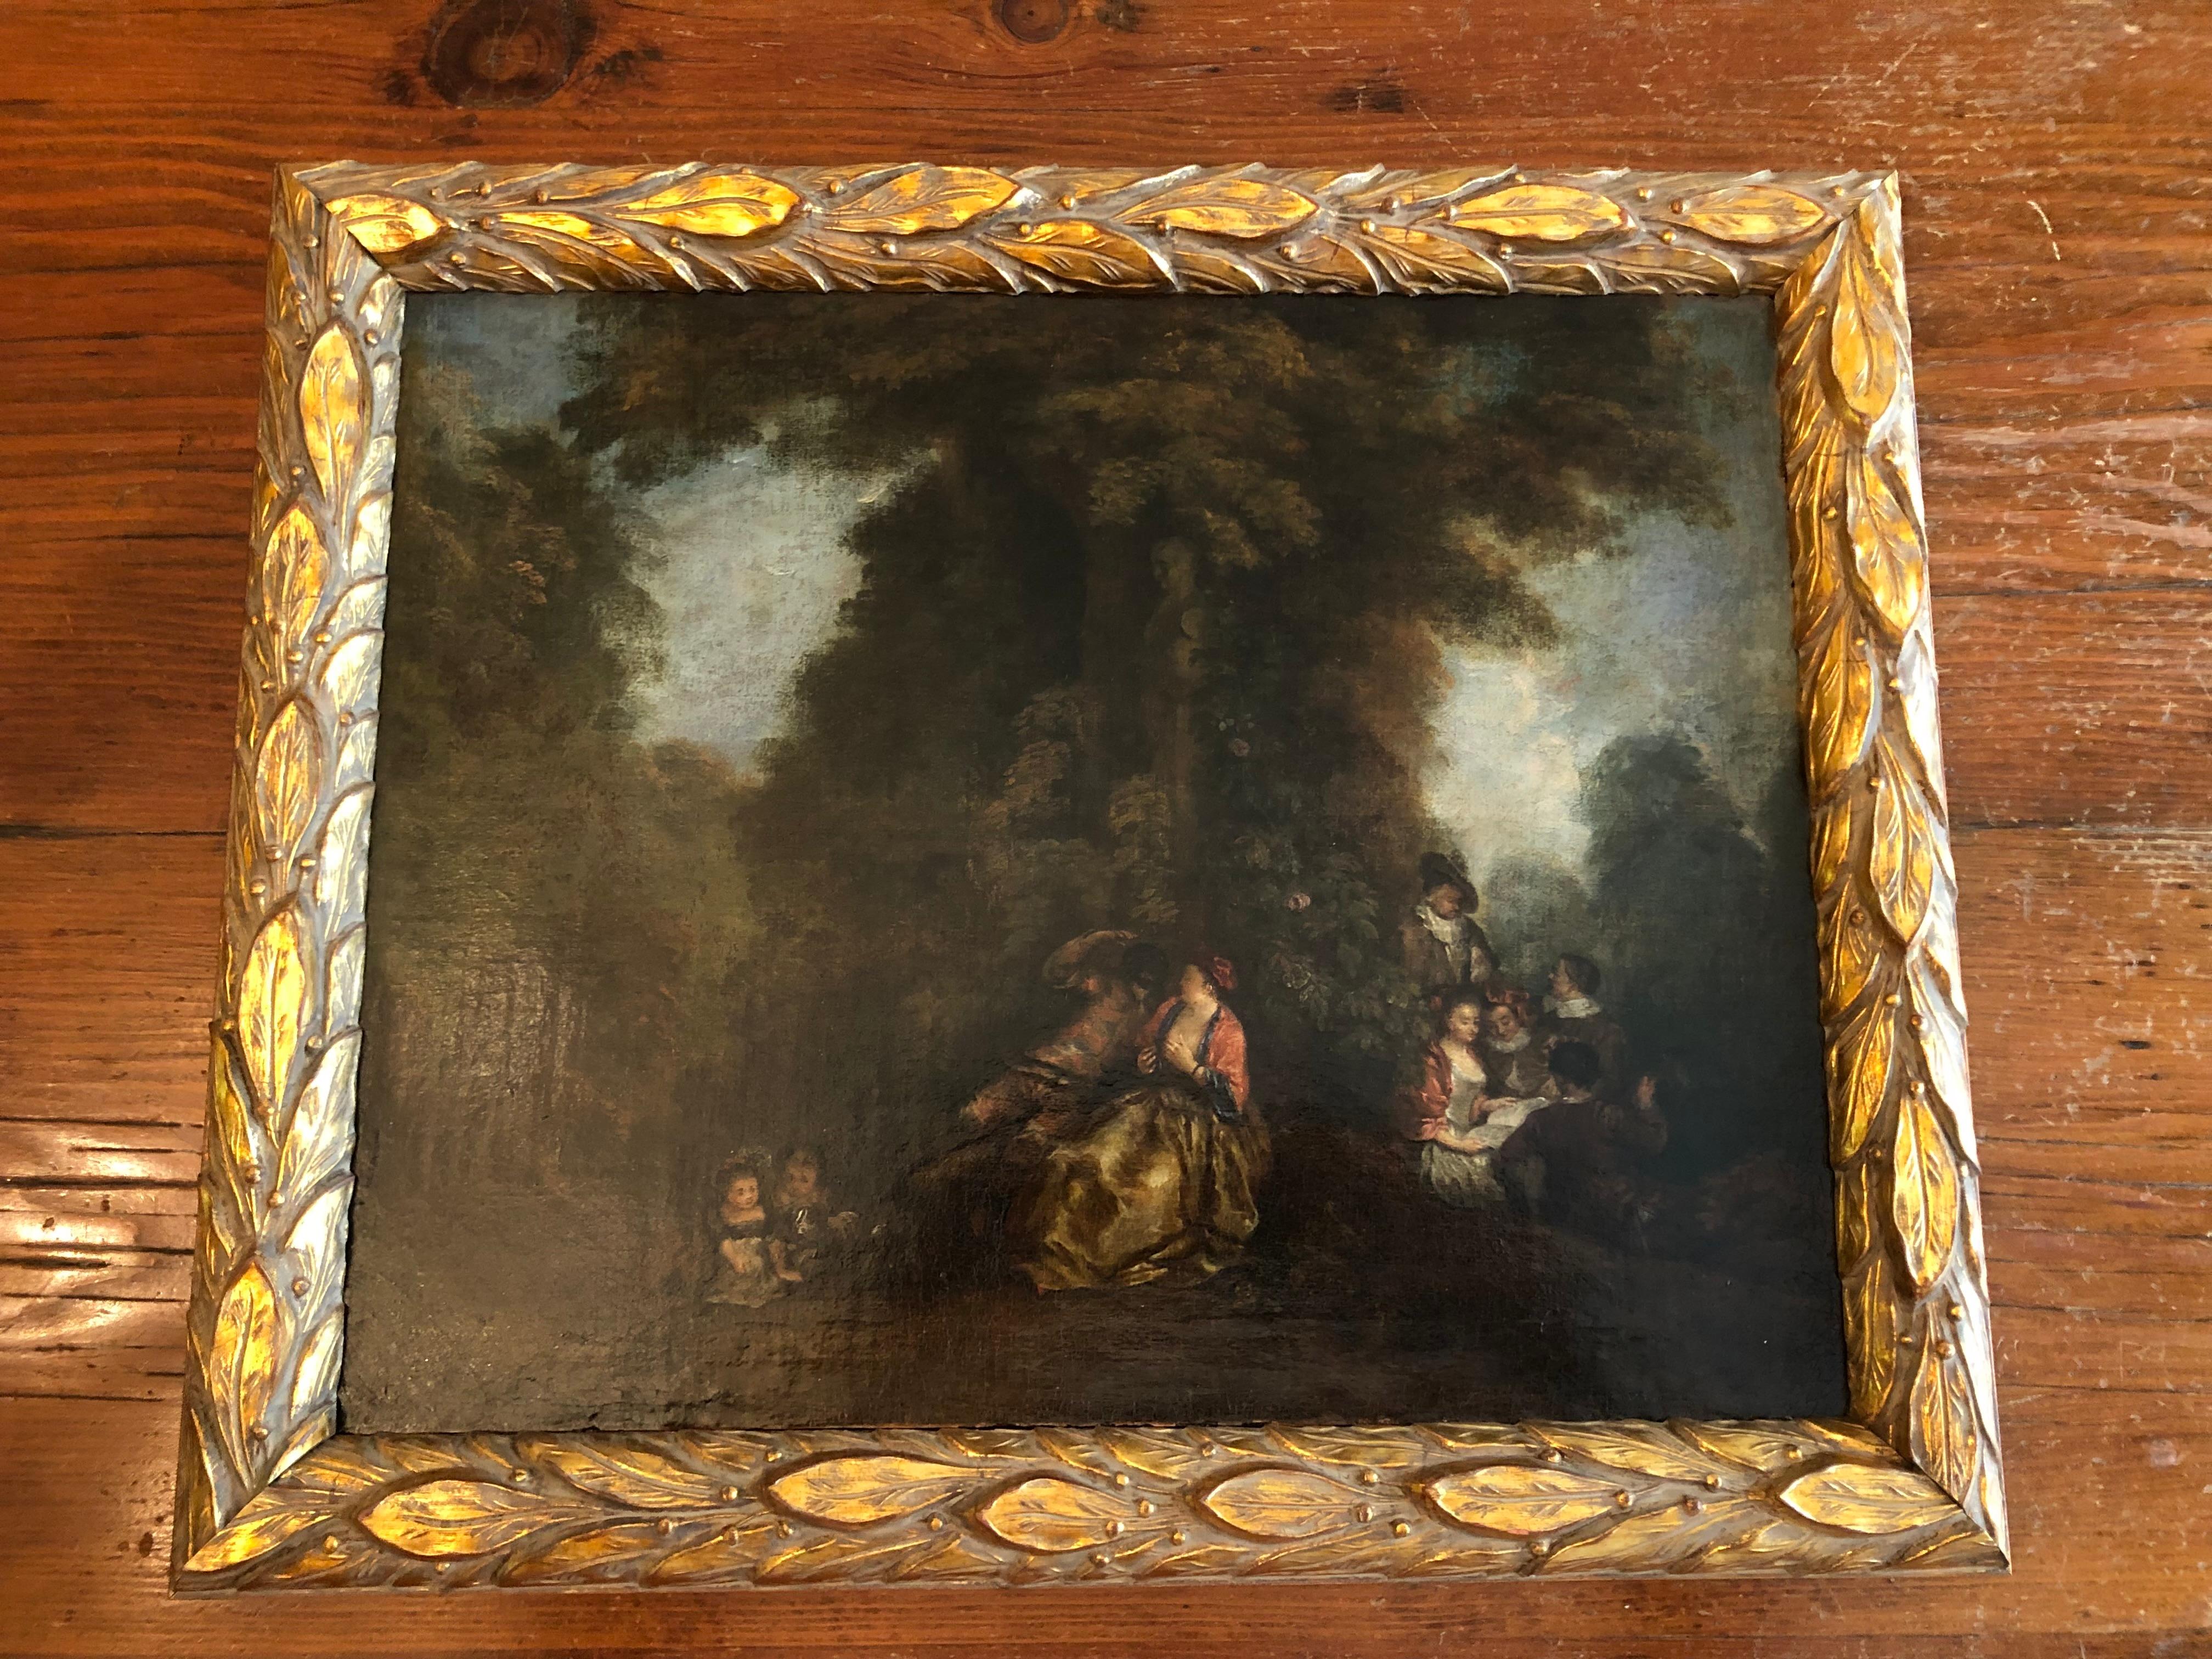 Une belle huile sur toile du XVIIIe siècle, représentant une scène de jardin typique de l'époque, également connue sous le nom de 